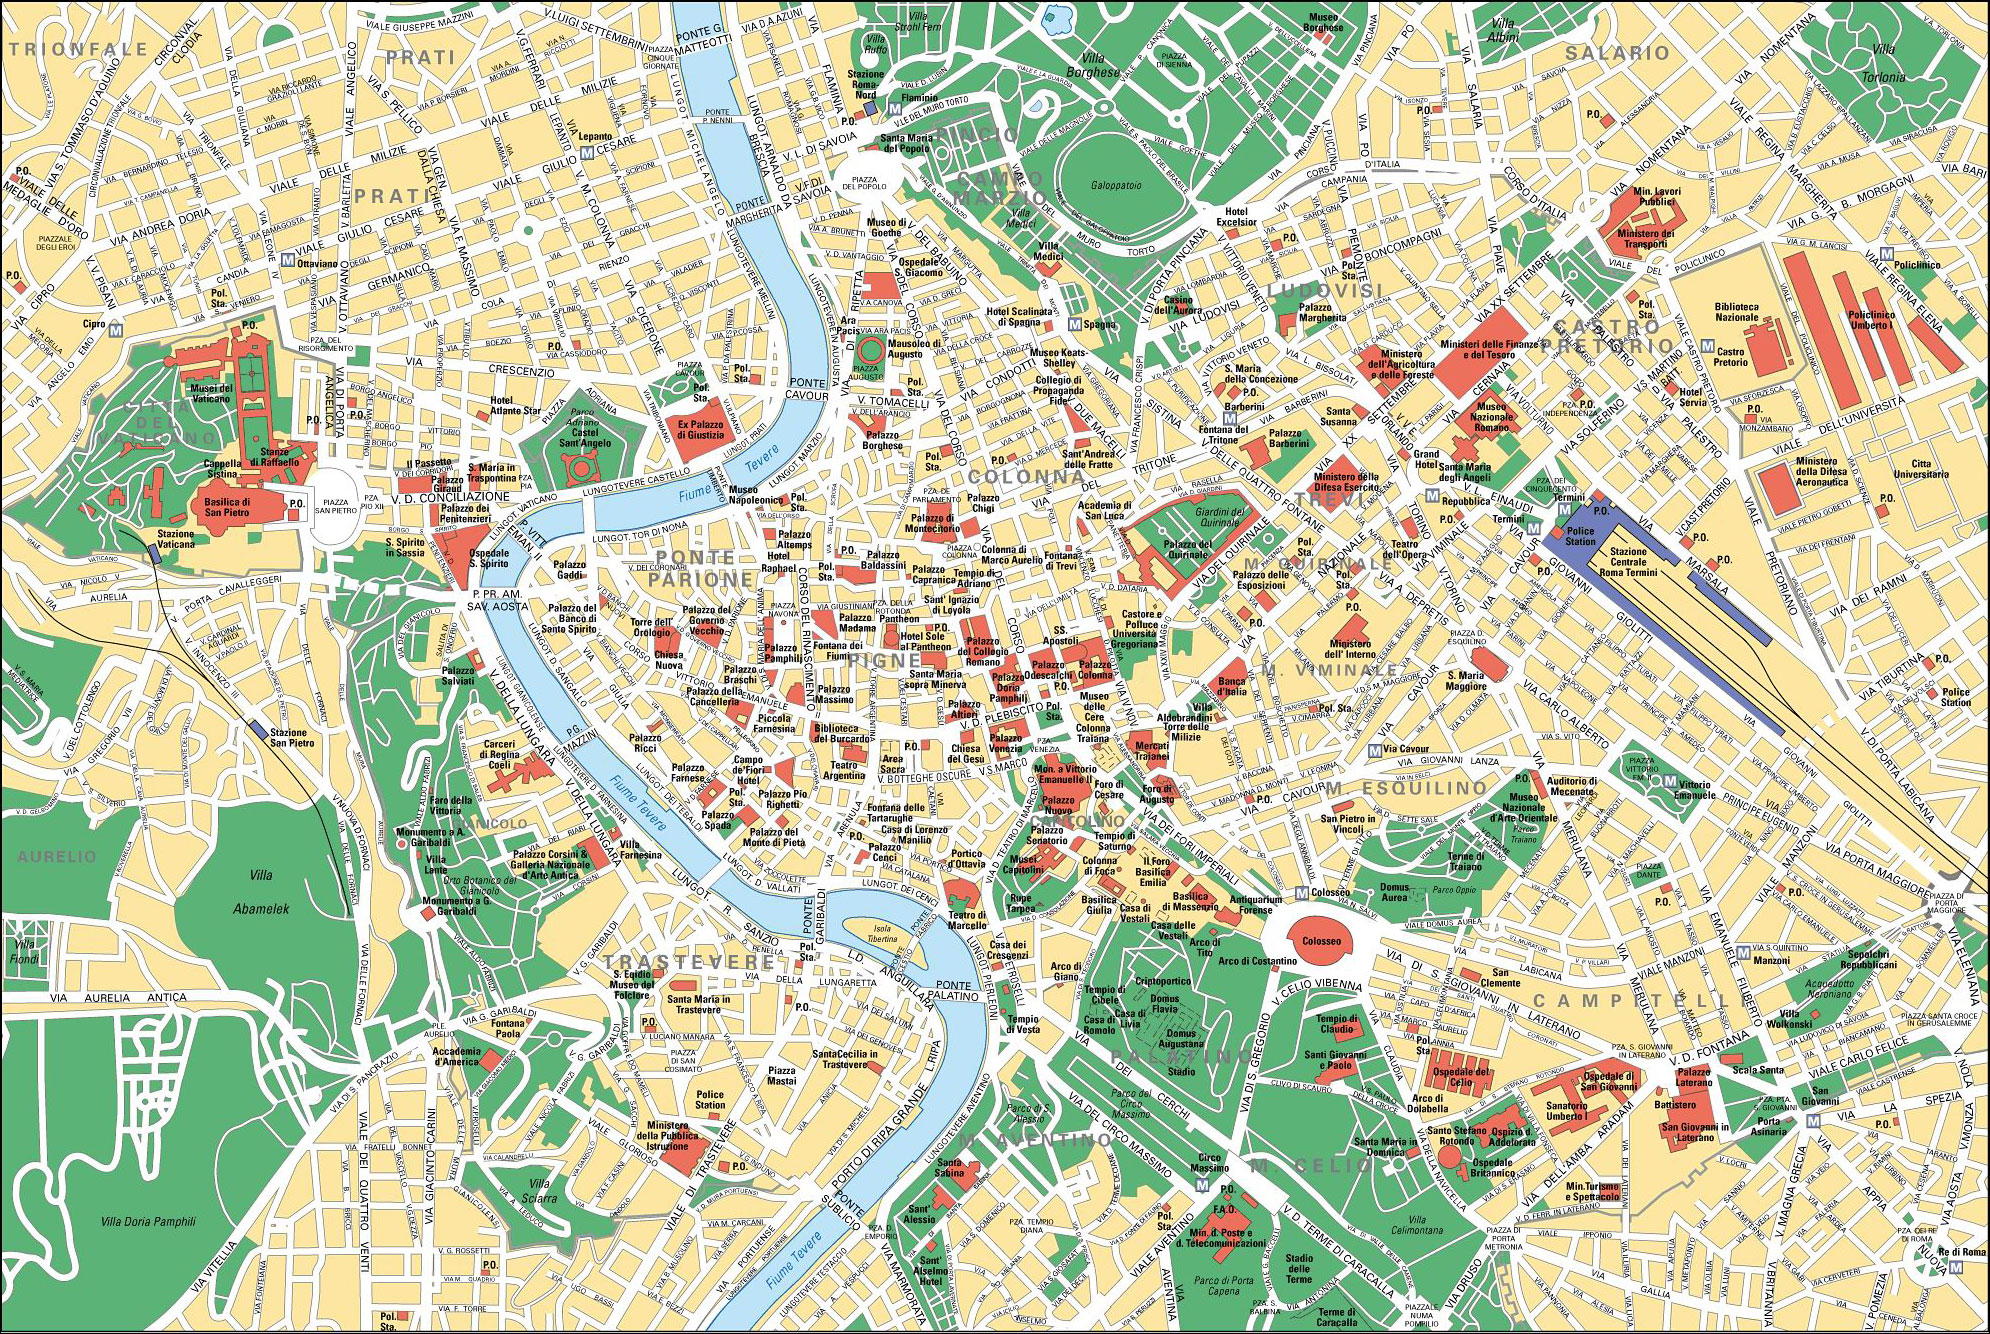 mapa-turistico-roma.jpg